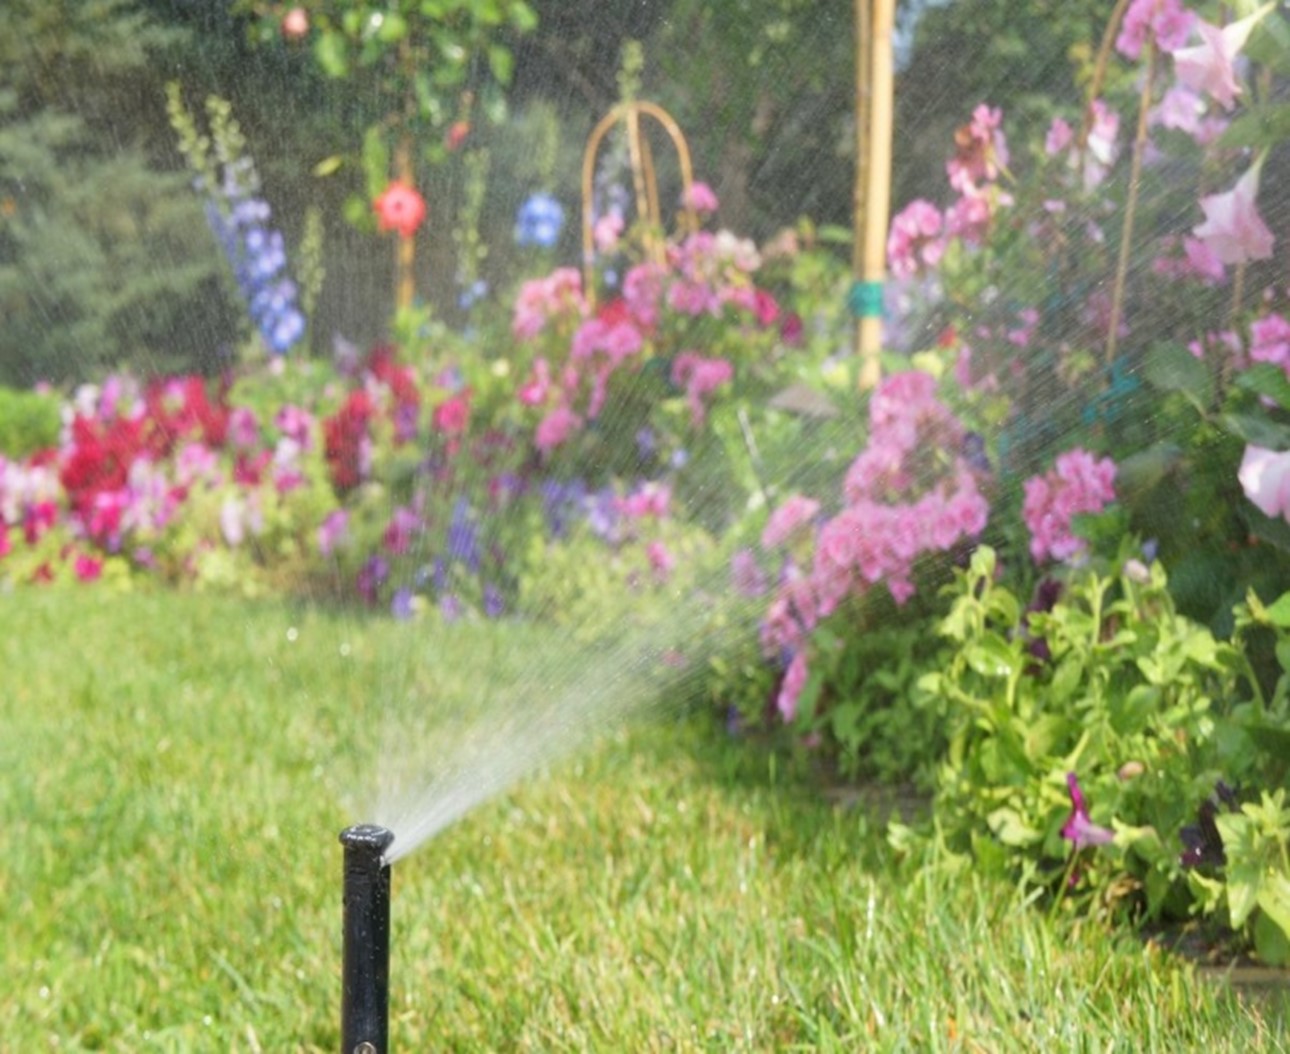 Sprinkler watering spring flowers 